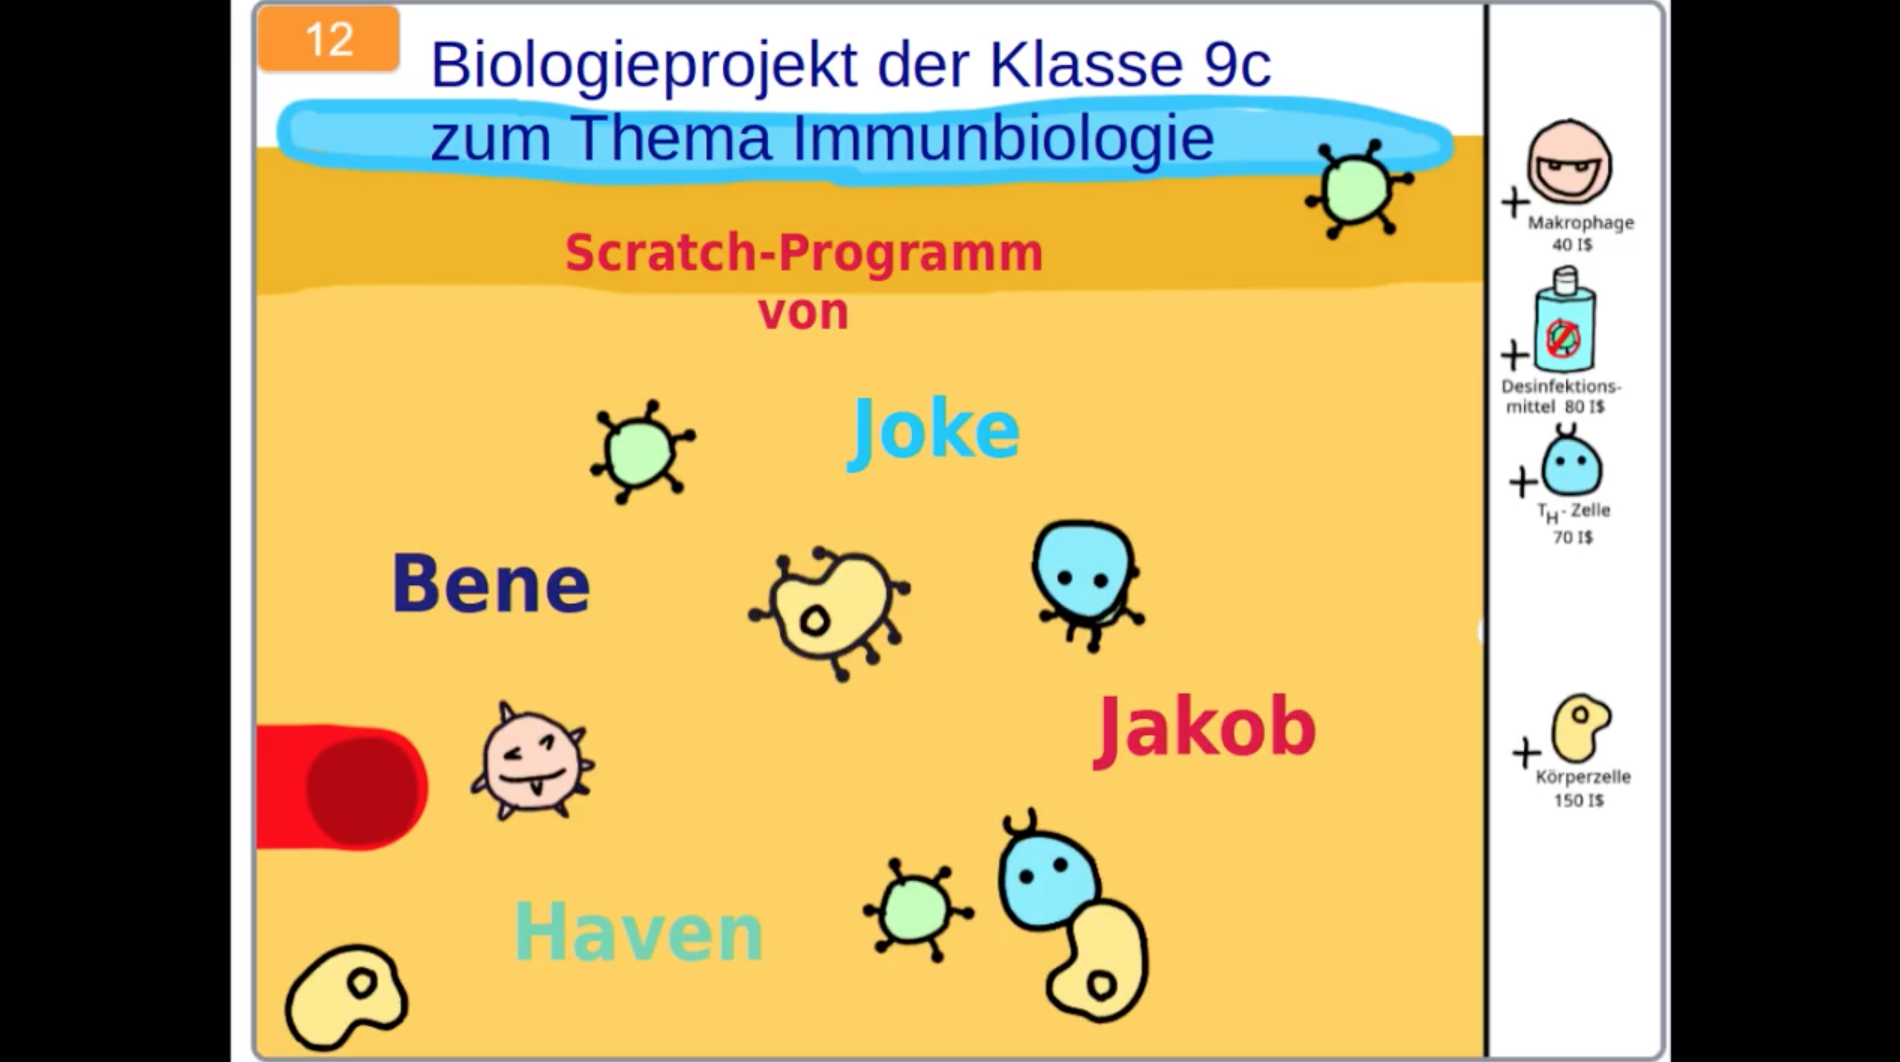 Informatik trifft (Immun-)Biologie: <br/> Das Immunsystem-Spiel der Klasse 9C!